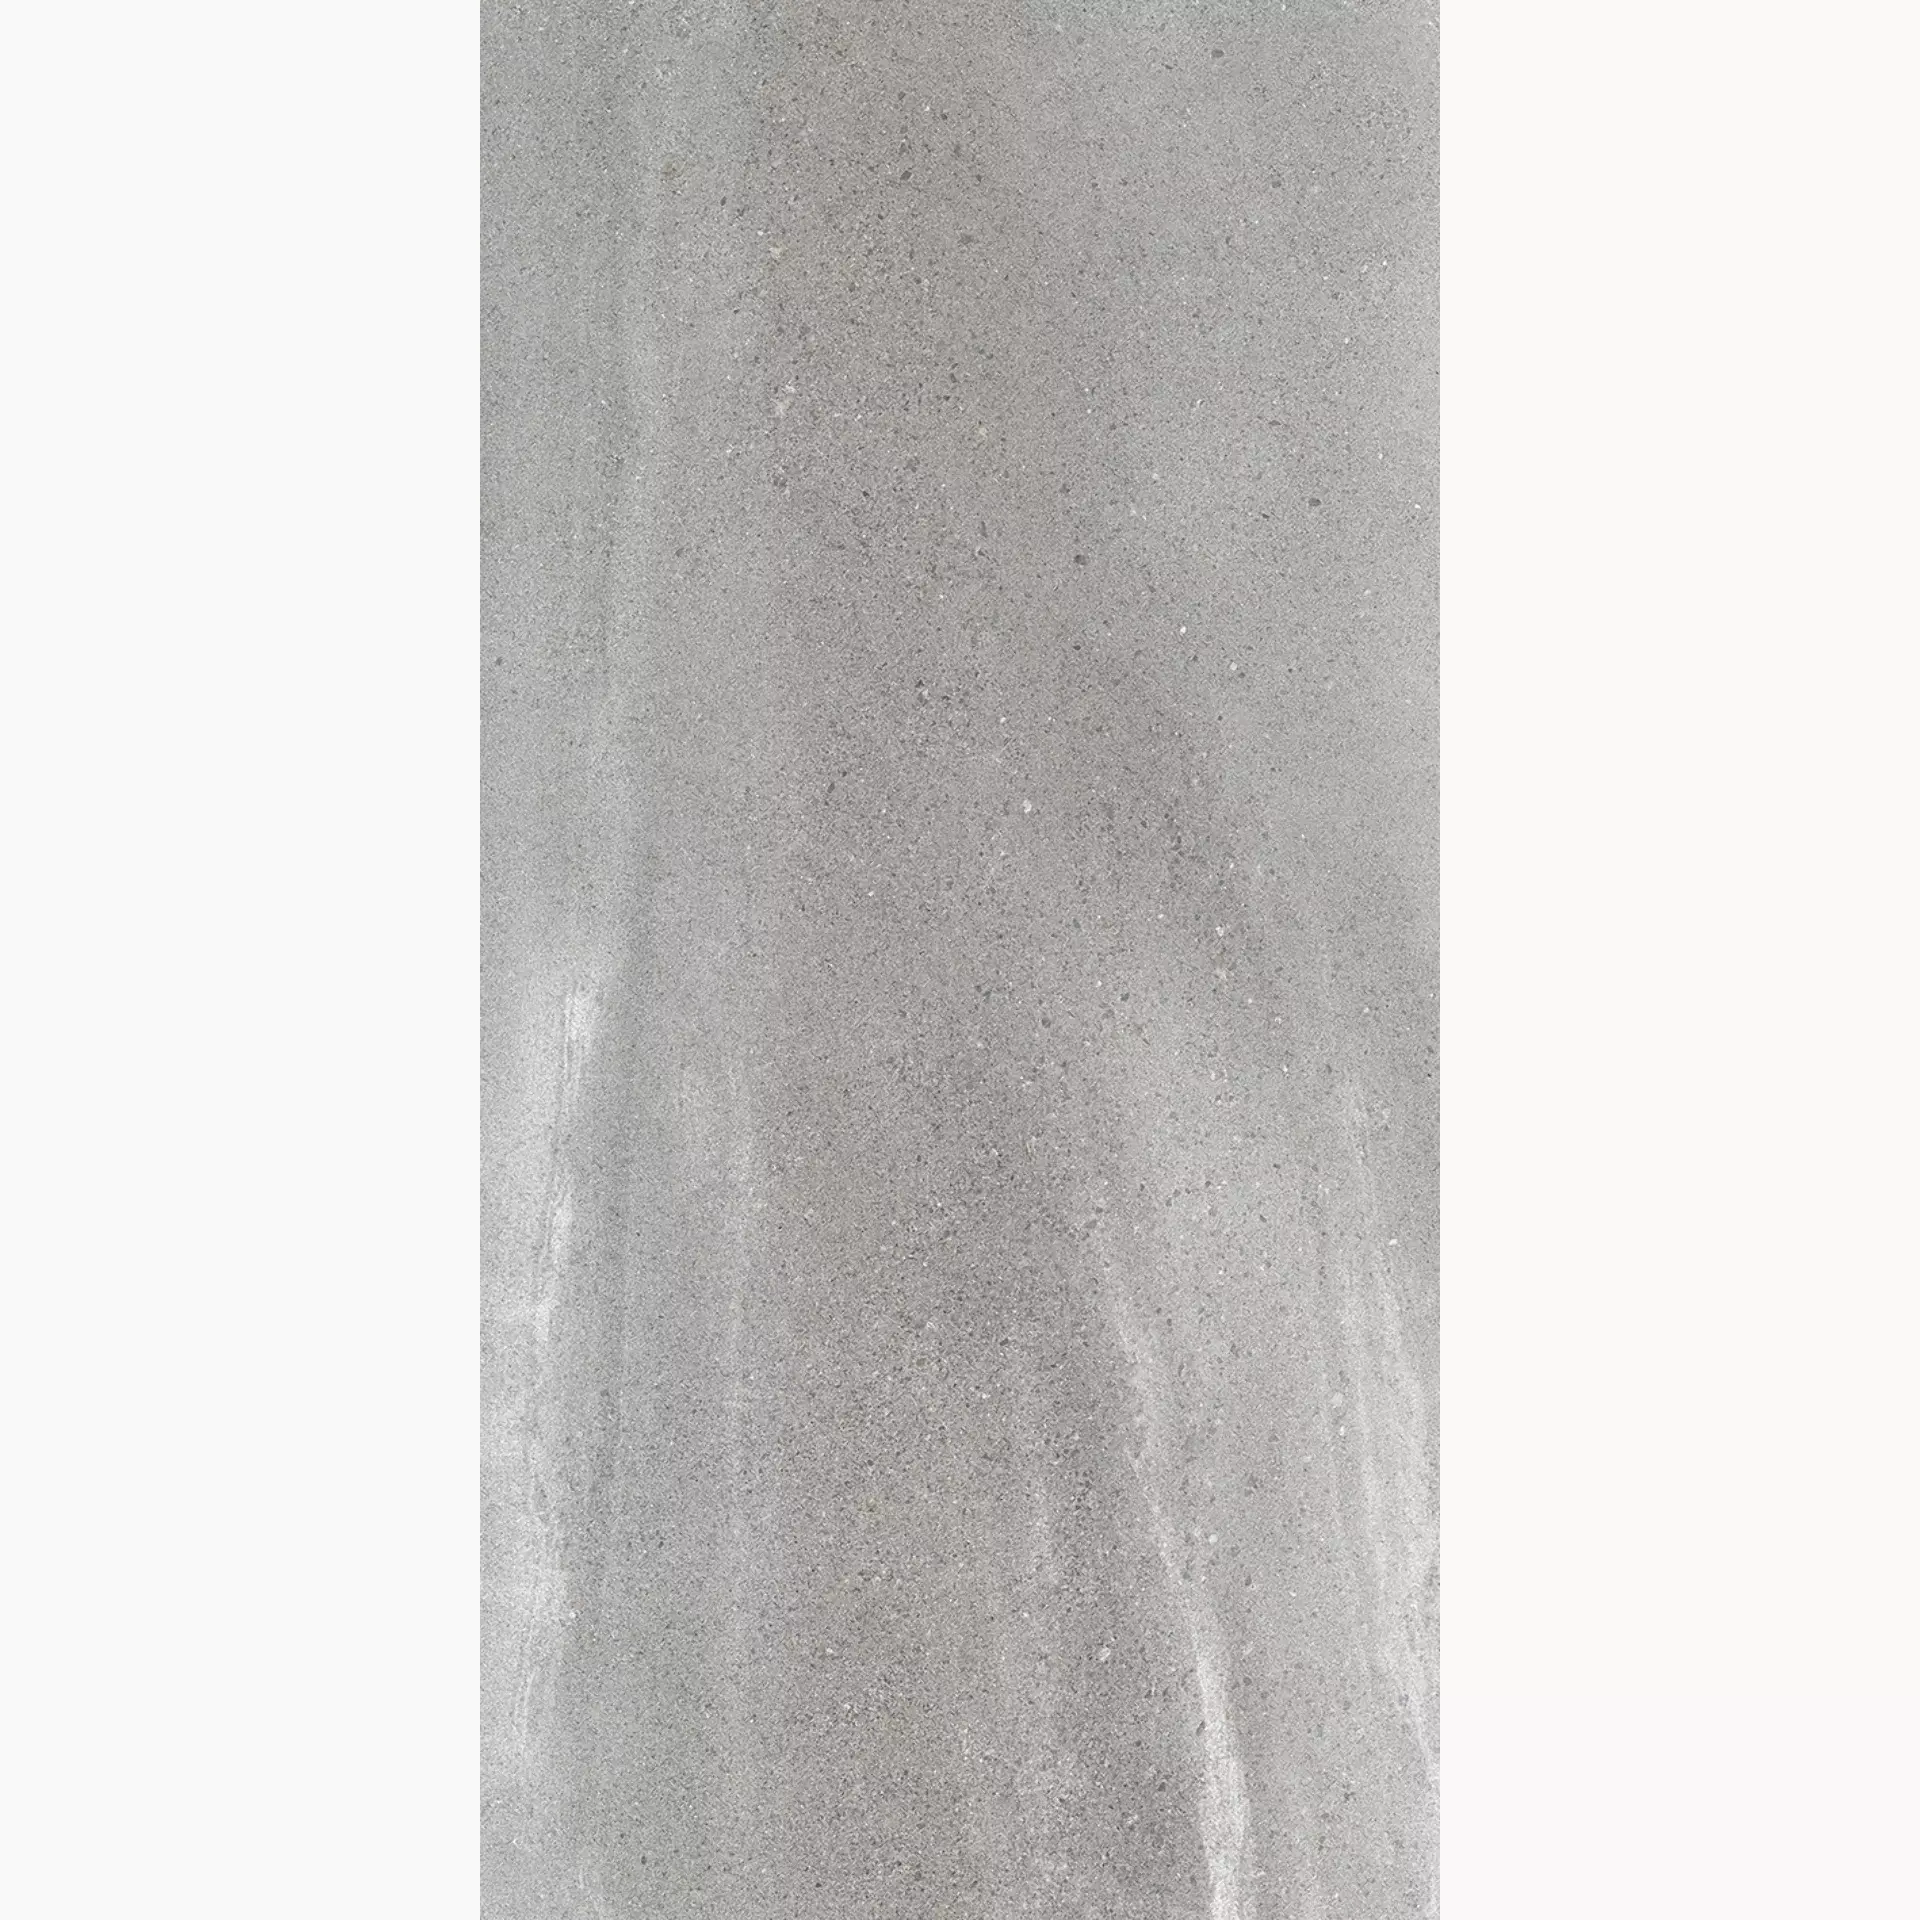 Wandfliese,Bodenfliese Villeroy & Boch Natural Blend Stone Grey Matt Stone Grey 2730-LY60 matt 60x120cm rektifiziert 10mm